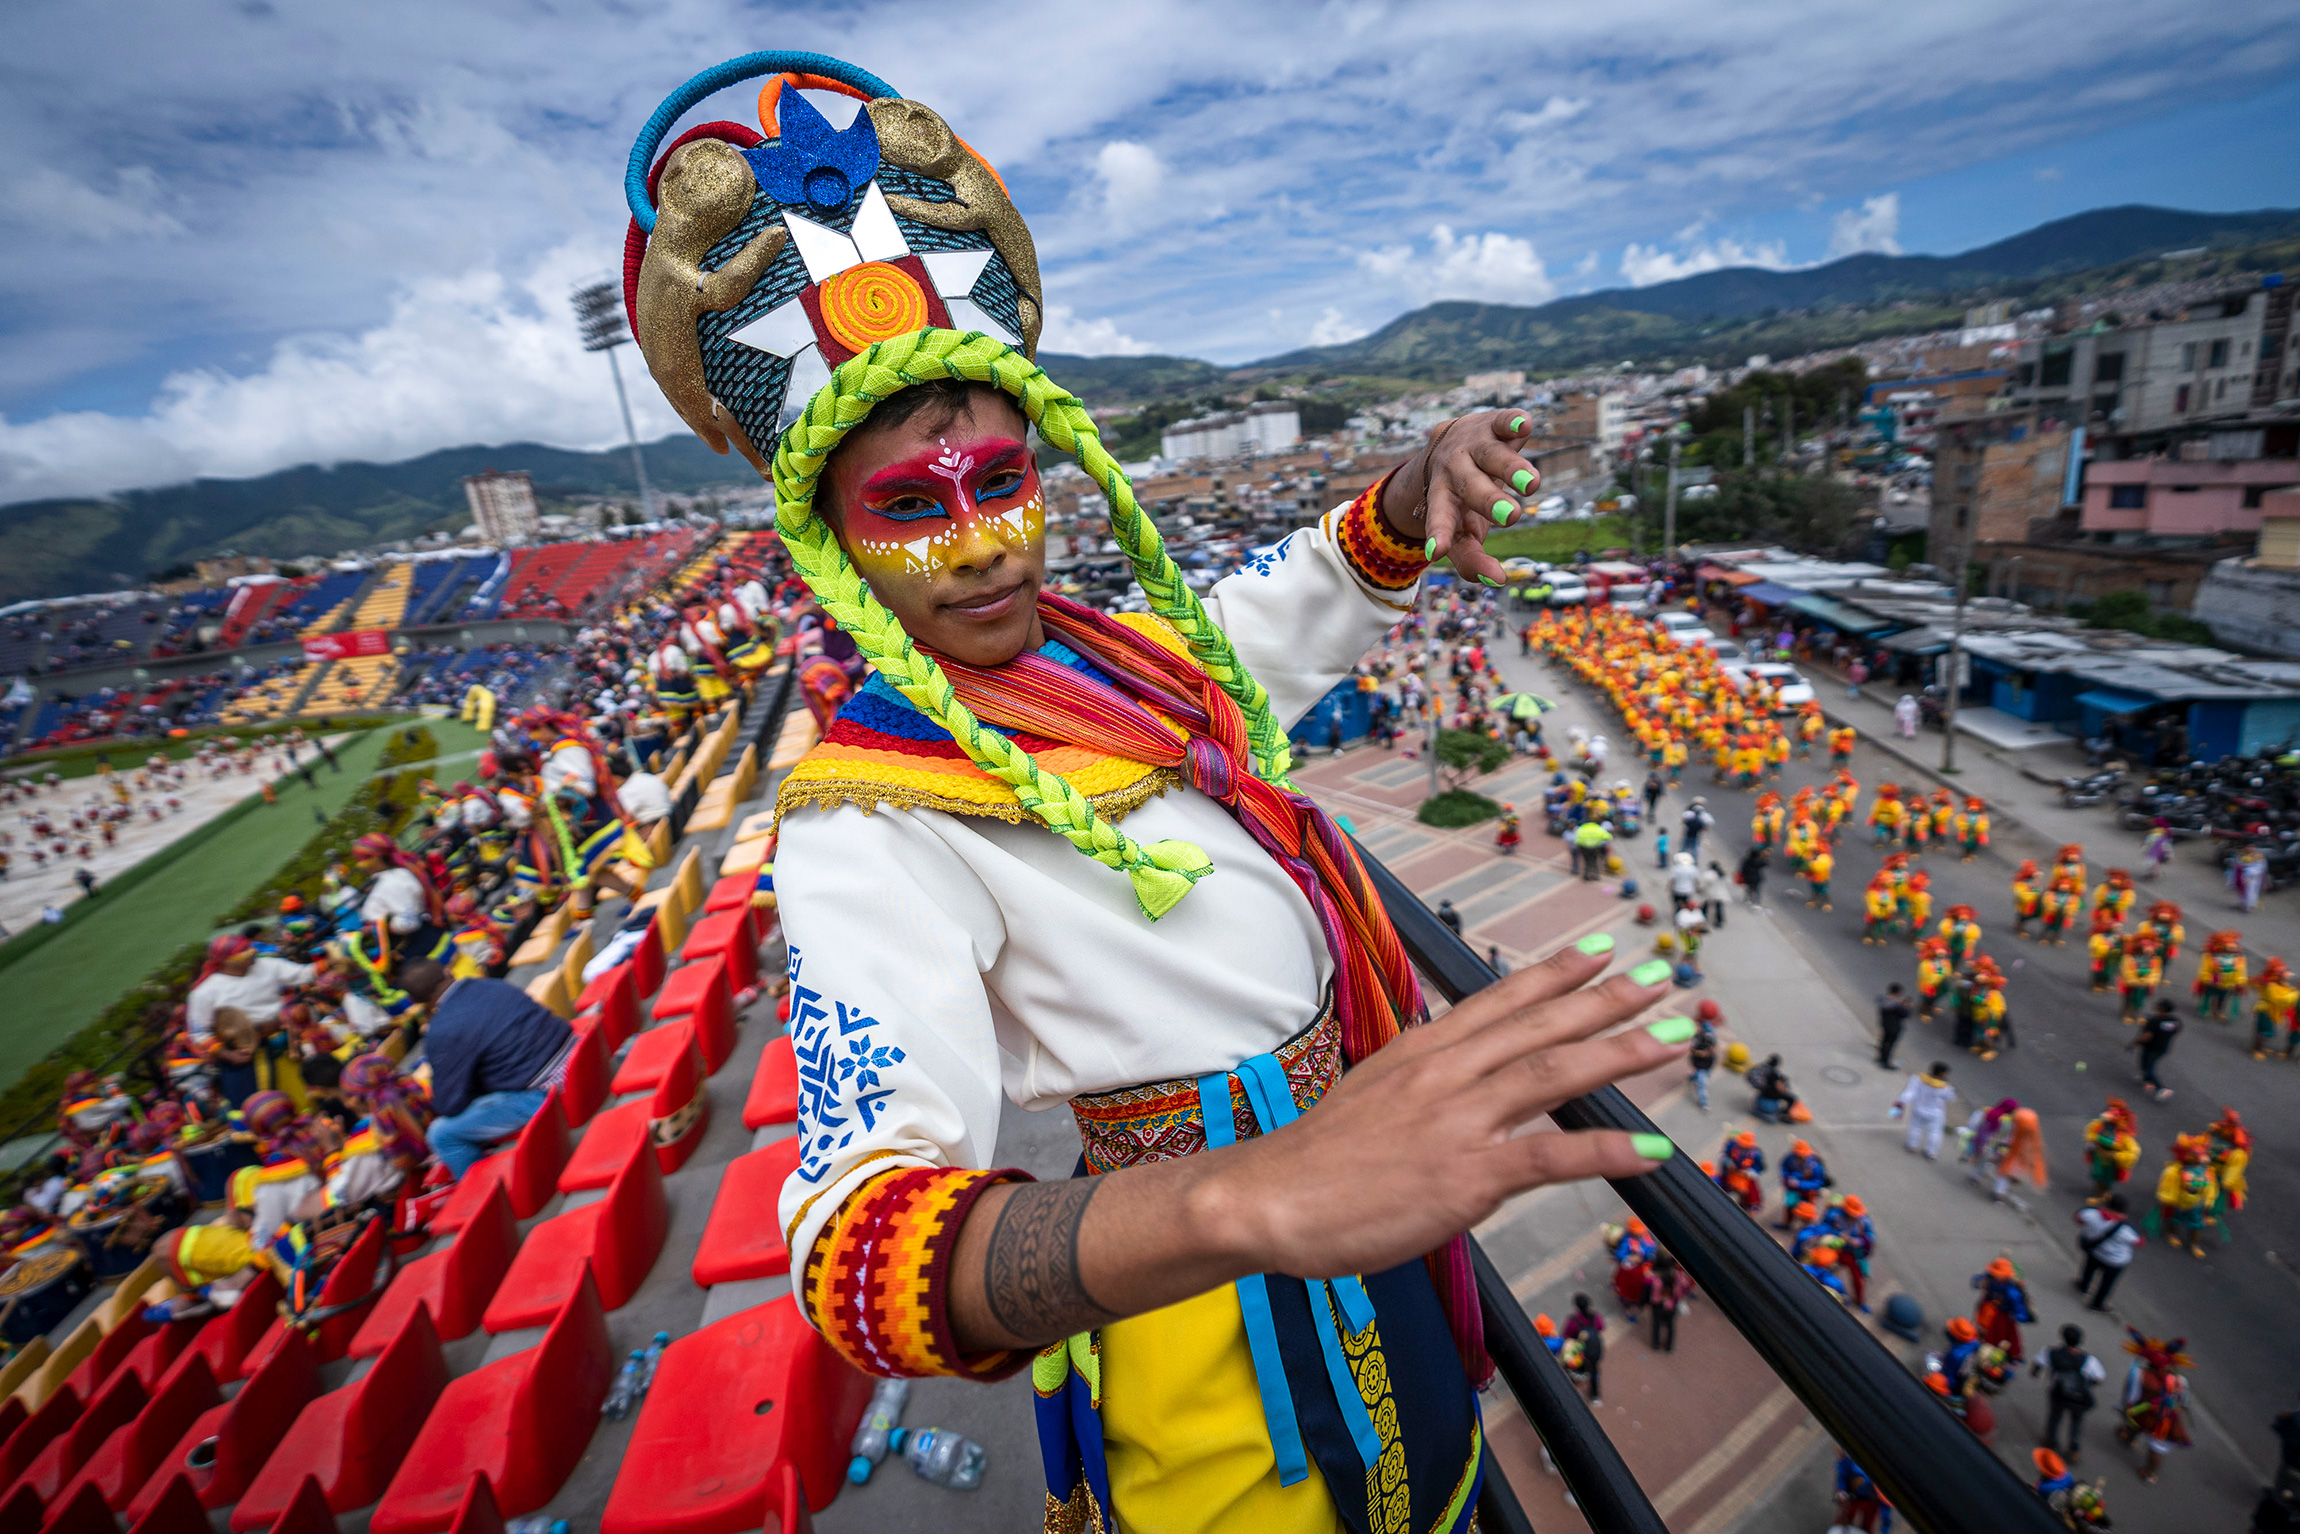 На фото: Carnaval de negros y blancos (Черно-белый карнавал), Сан-Хуан-де-Пасто, Колумбия, 3 января.
Черно-белый карнавал проводится ежегодно с 28 декабря по 6 января. Он основан на индейских и латиноамериканских традициях. Два последних дня считаются основными: в первый из них люди всех национальностей наносят черный грим, а во второй&nbsp;&mdash; белый тальк, что символизирует равенство. В 2009 году ЮНЕСКО внесла Черно-белый карнавал в список нематериального культурного наследия человечества